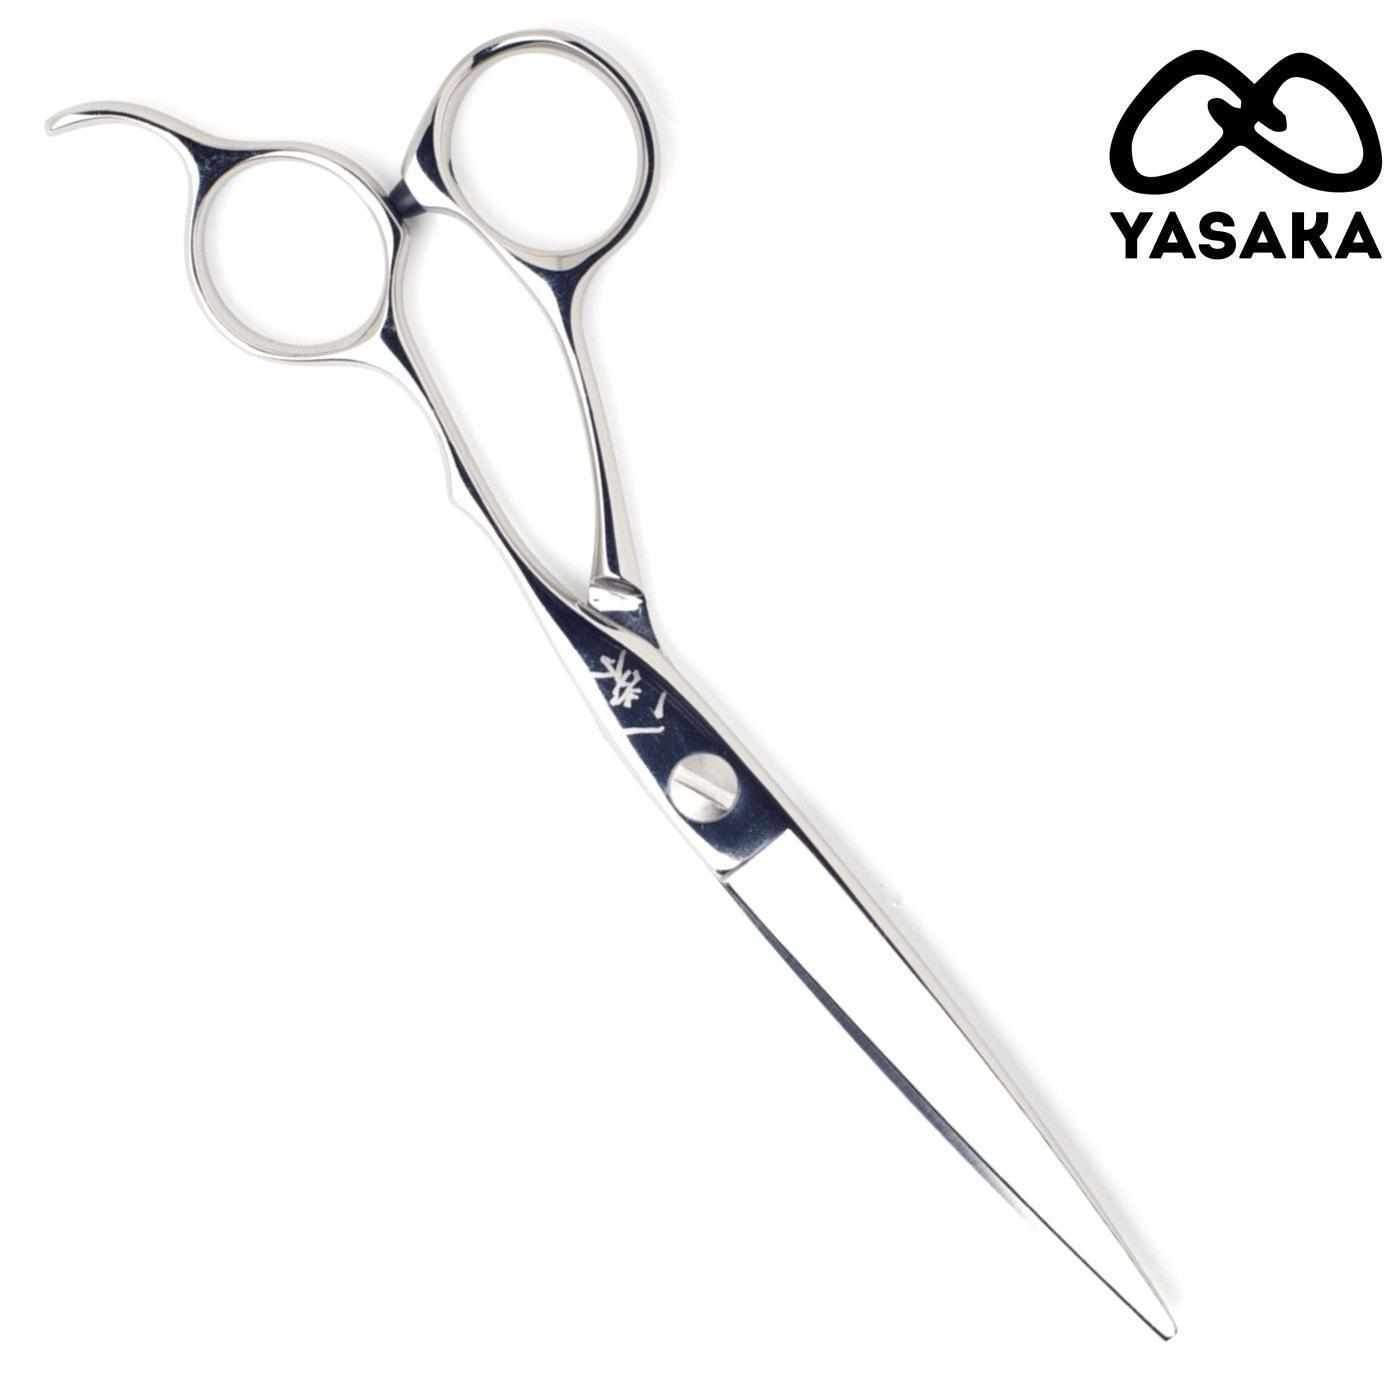 Yasaka Dry W Hairdressing Shear - Japan Scissors USA